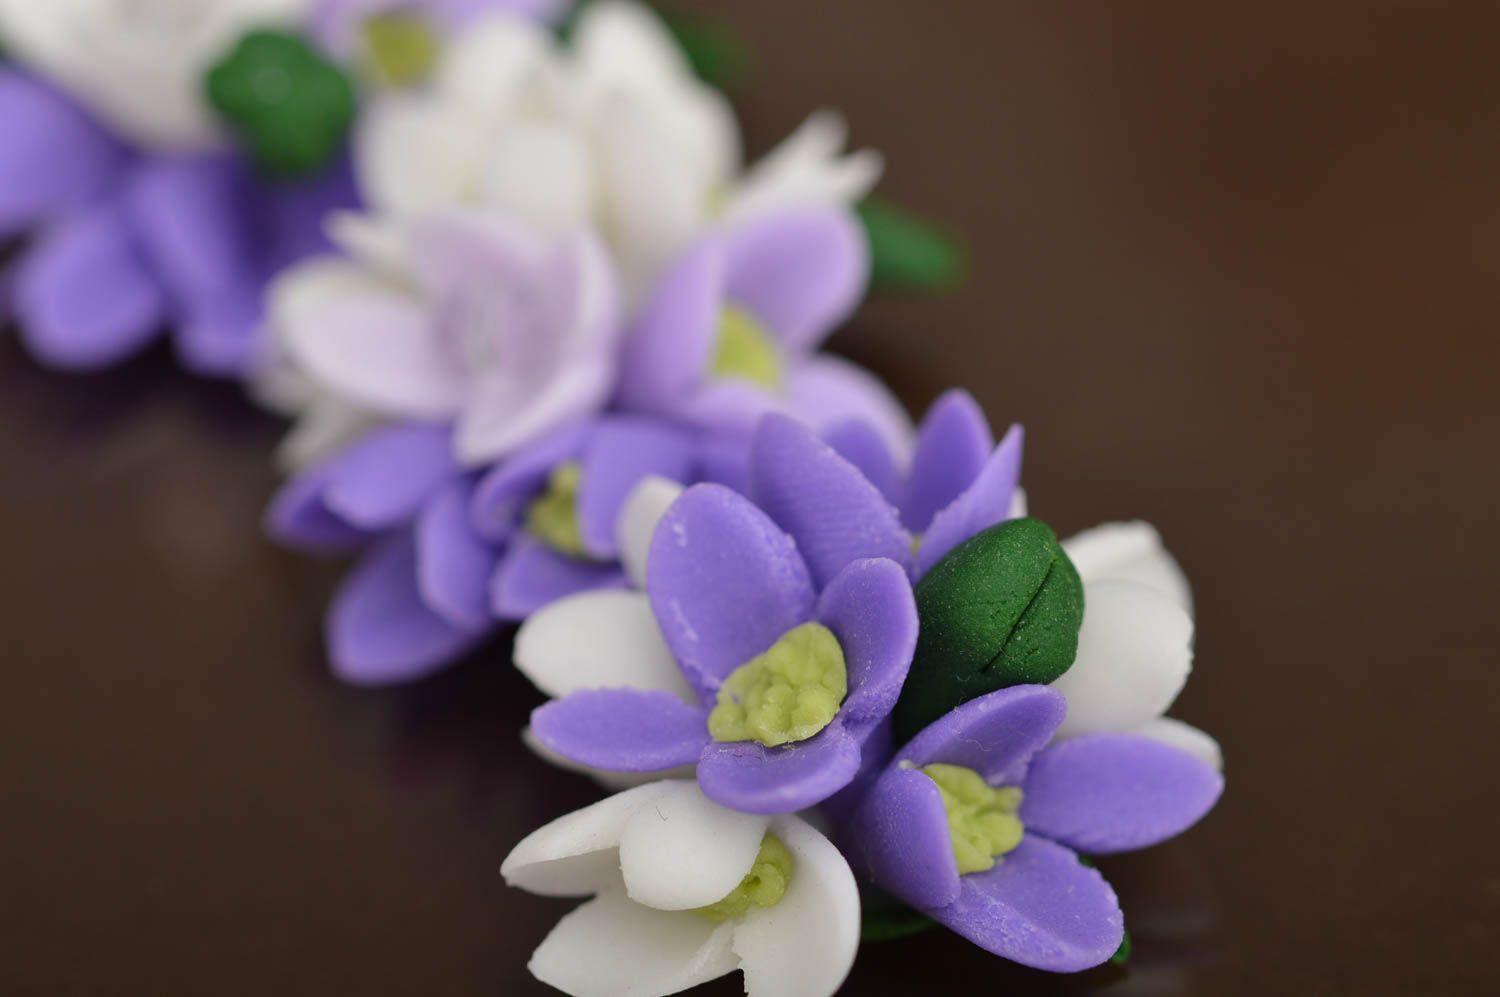 Collier en pâte polymère fleurs délicates mauve blanc fait main chaînette 22 cm photo 4